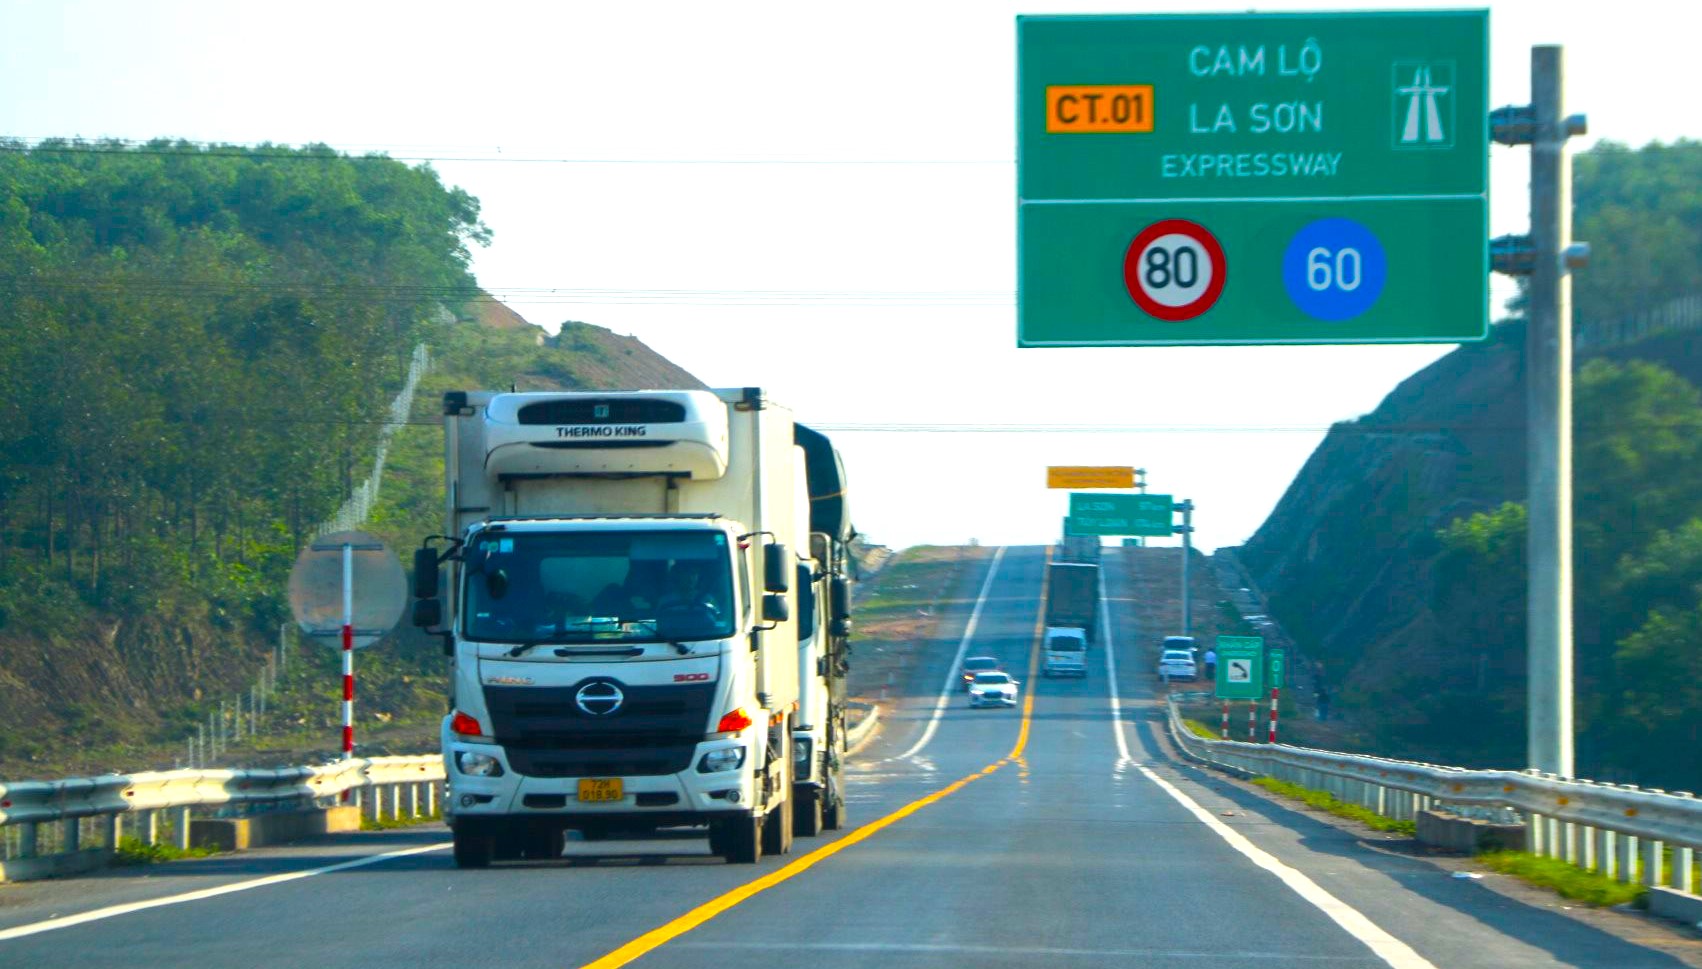 Cục Đường bộ phản hồi đề xuất không cấm xe cỡ lớn đi cao tốc Cam Lộ - La Sơn- Ảnh 1.